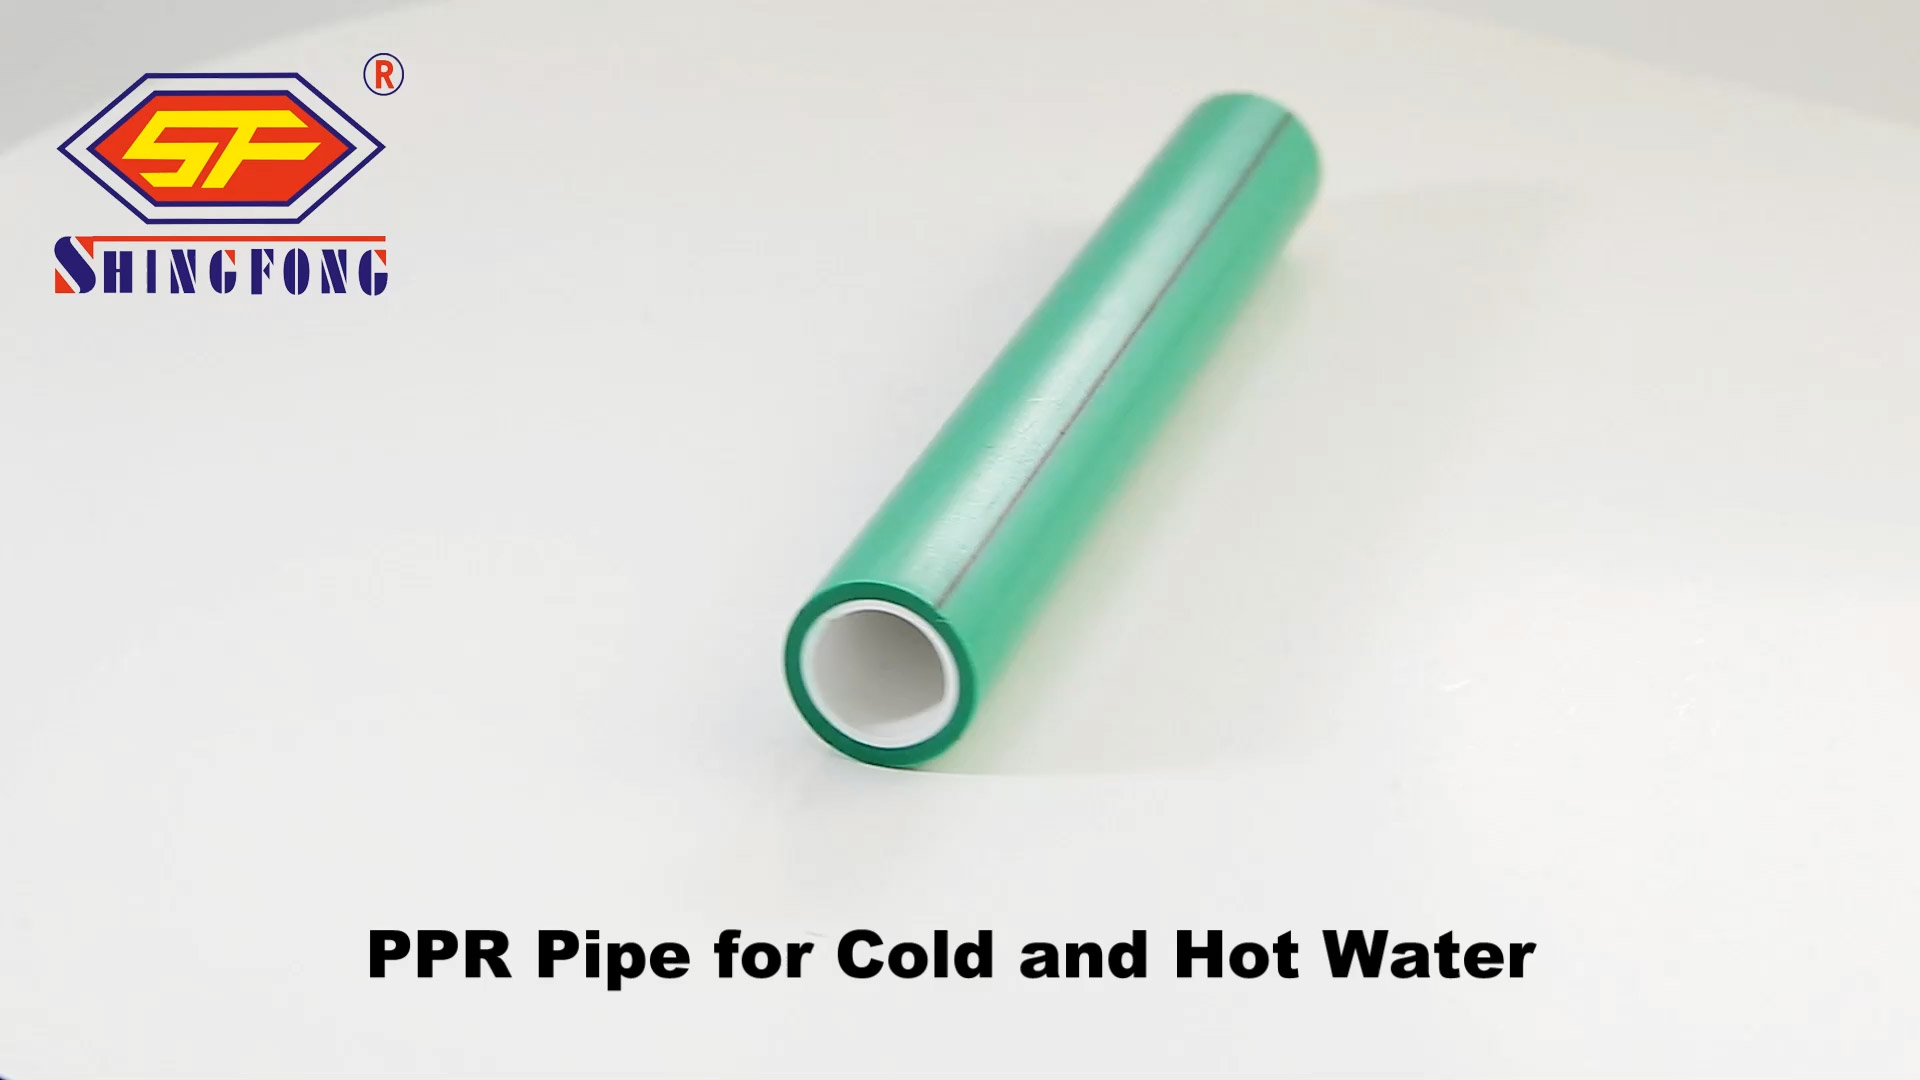 أفضل أسعار أنابيب PPR لمصنع المياه الباردة والساخنة | شينغفونغ